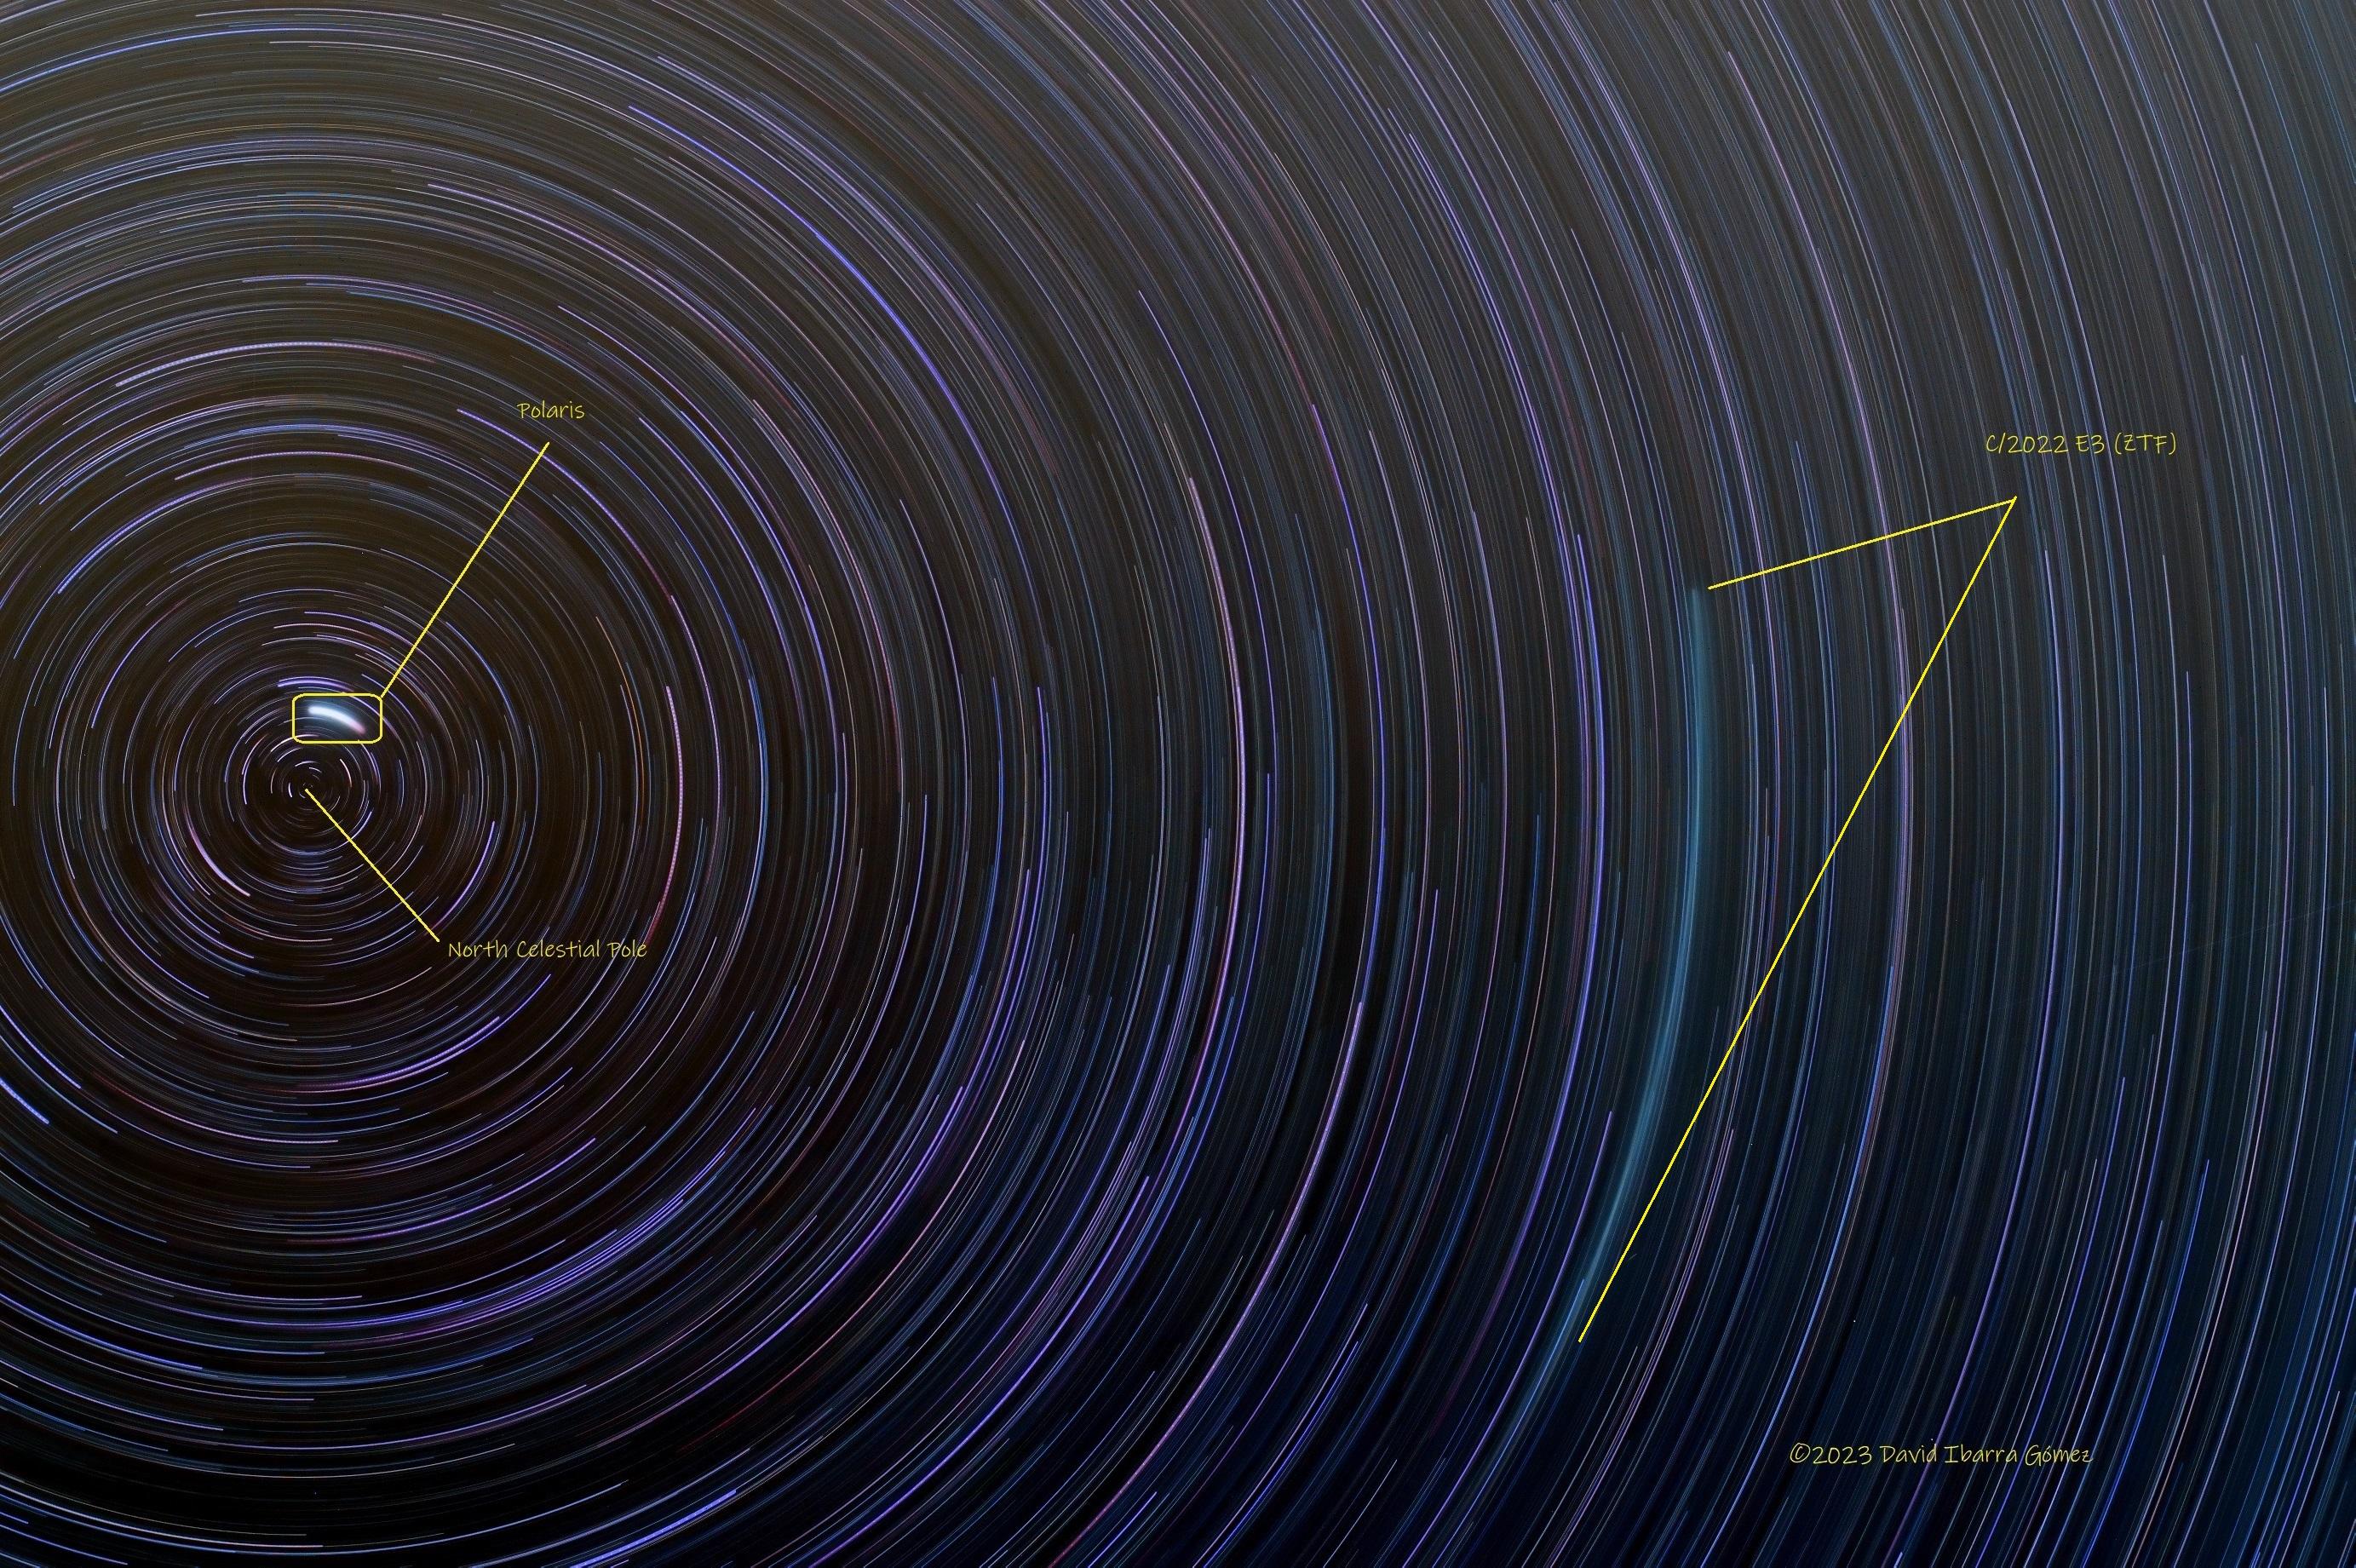 مسارات نجميّة متّحدة المركز عند القطب السماوي الشمالي قرب نجم الجدي پولاريس مع ظهور خطّ هو مسار المذنّب وعنونة الثلاثة بالإنكليزيّة